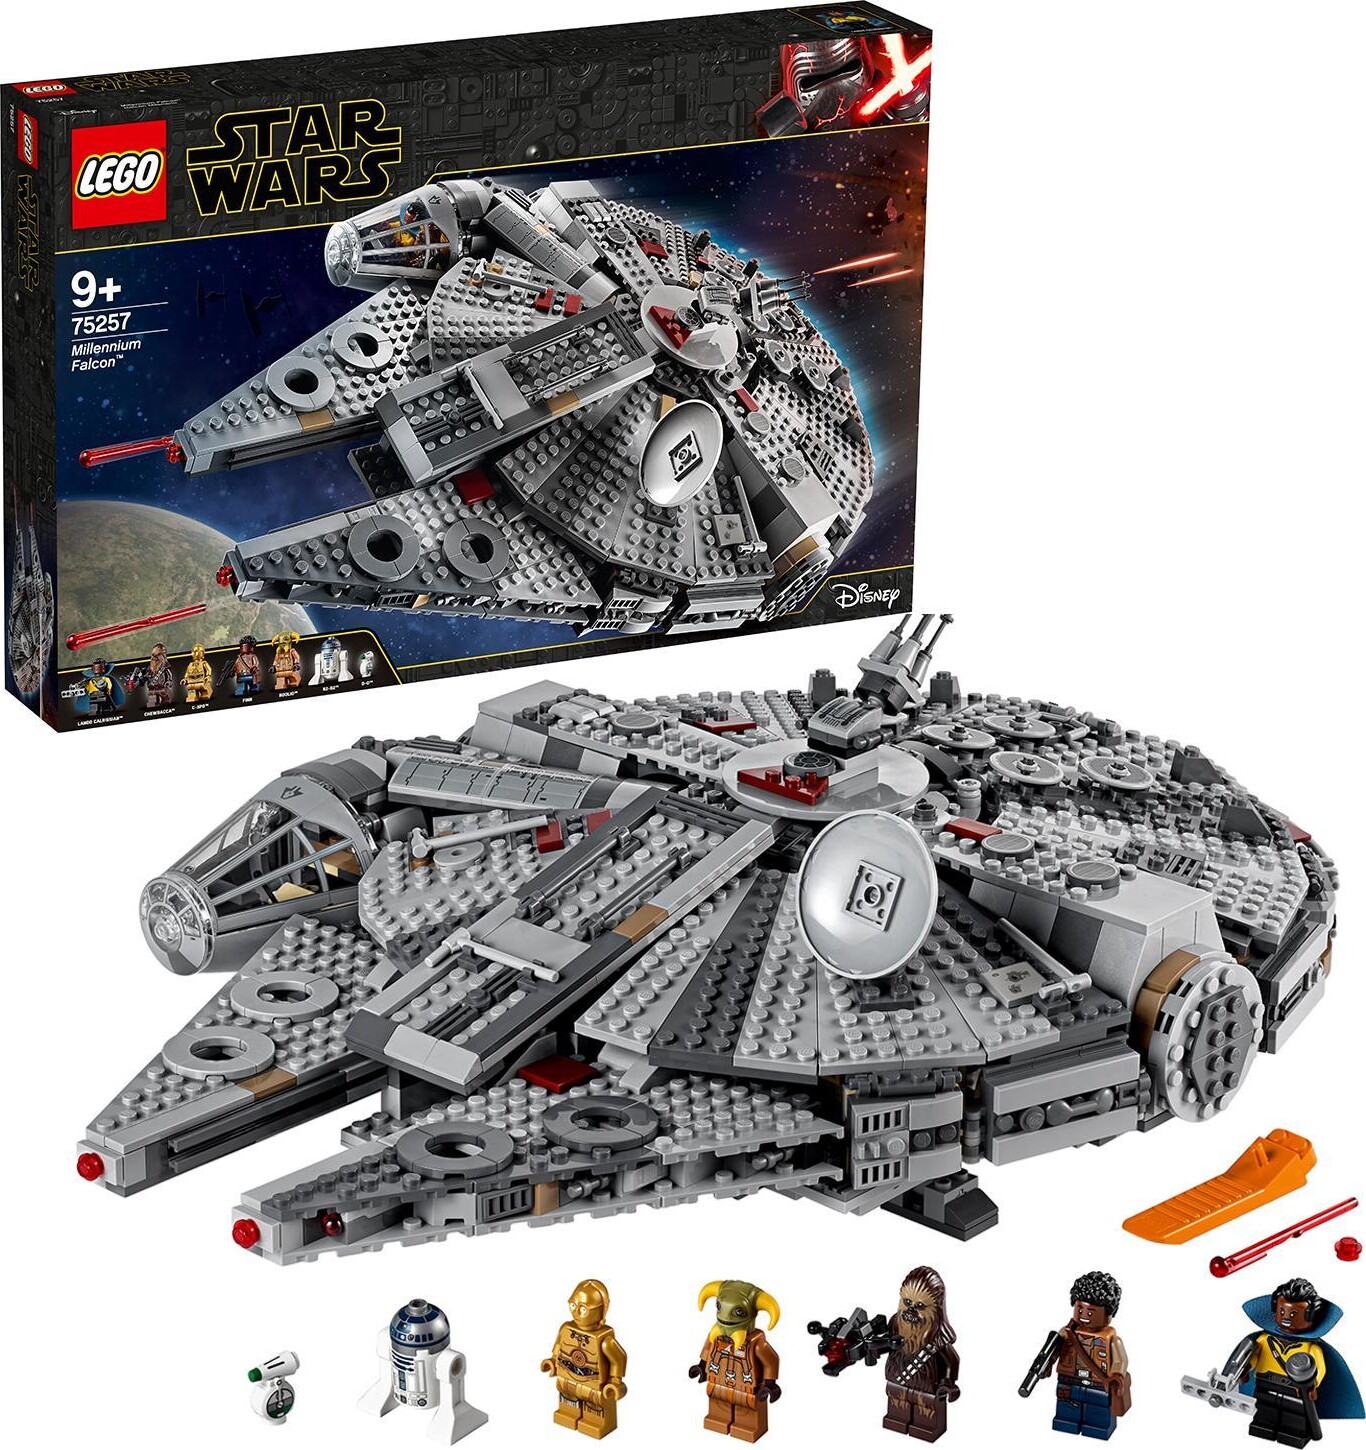 Billede af Lego Star Wars - Tusindårsfalken - 75257